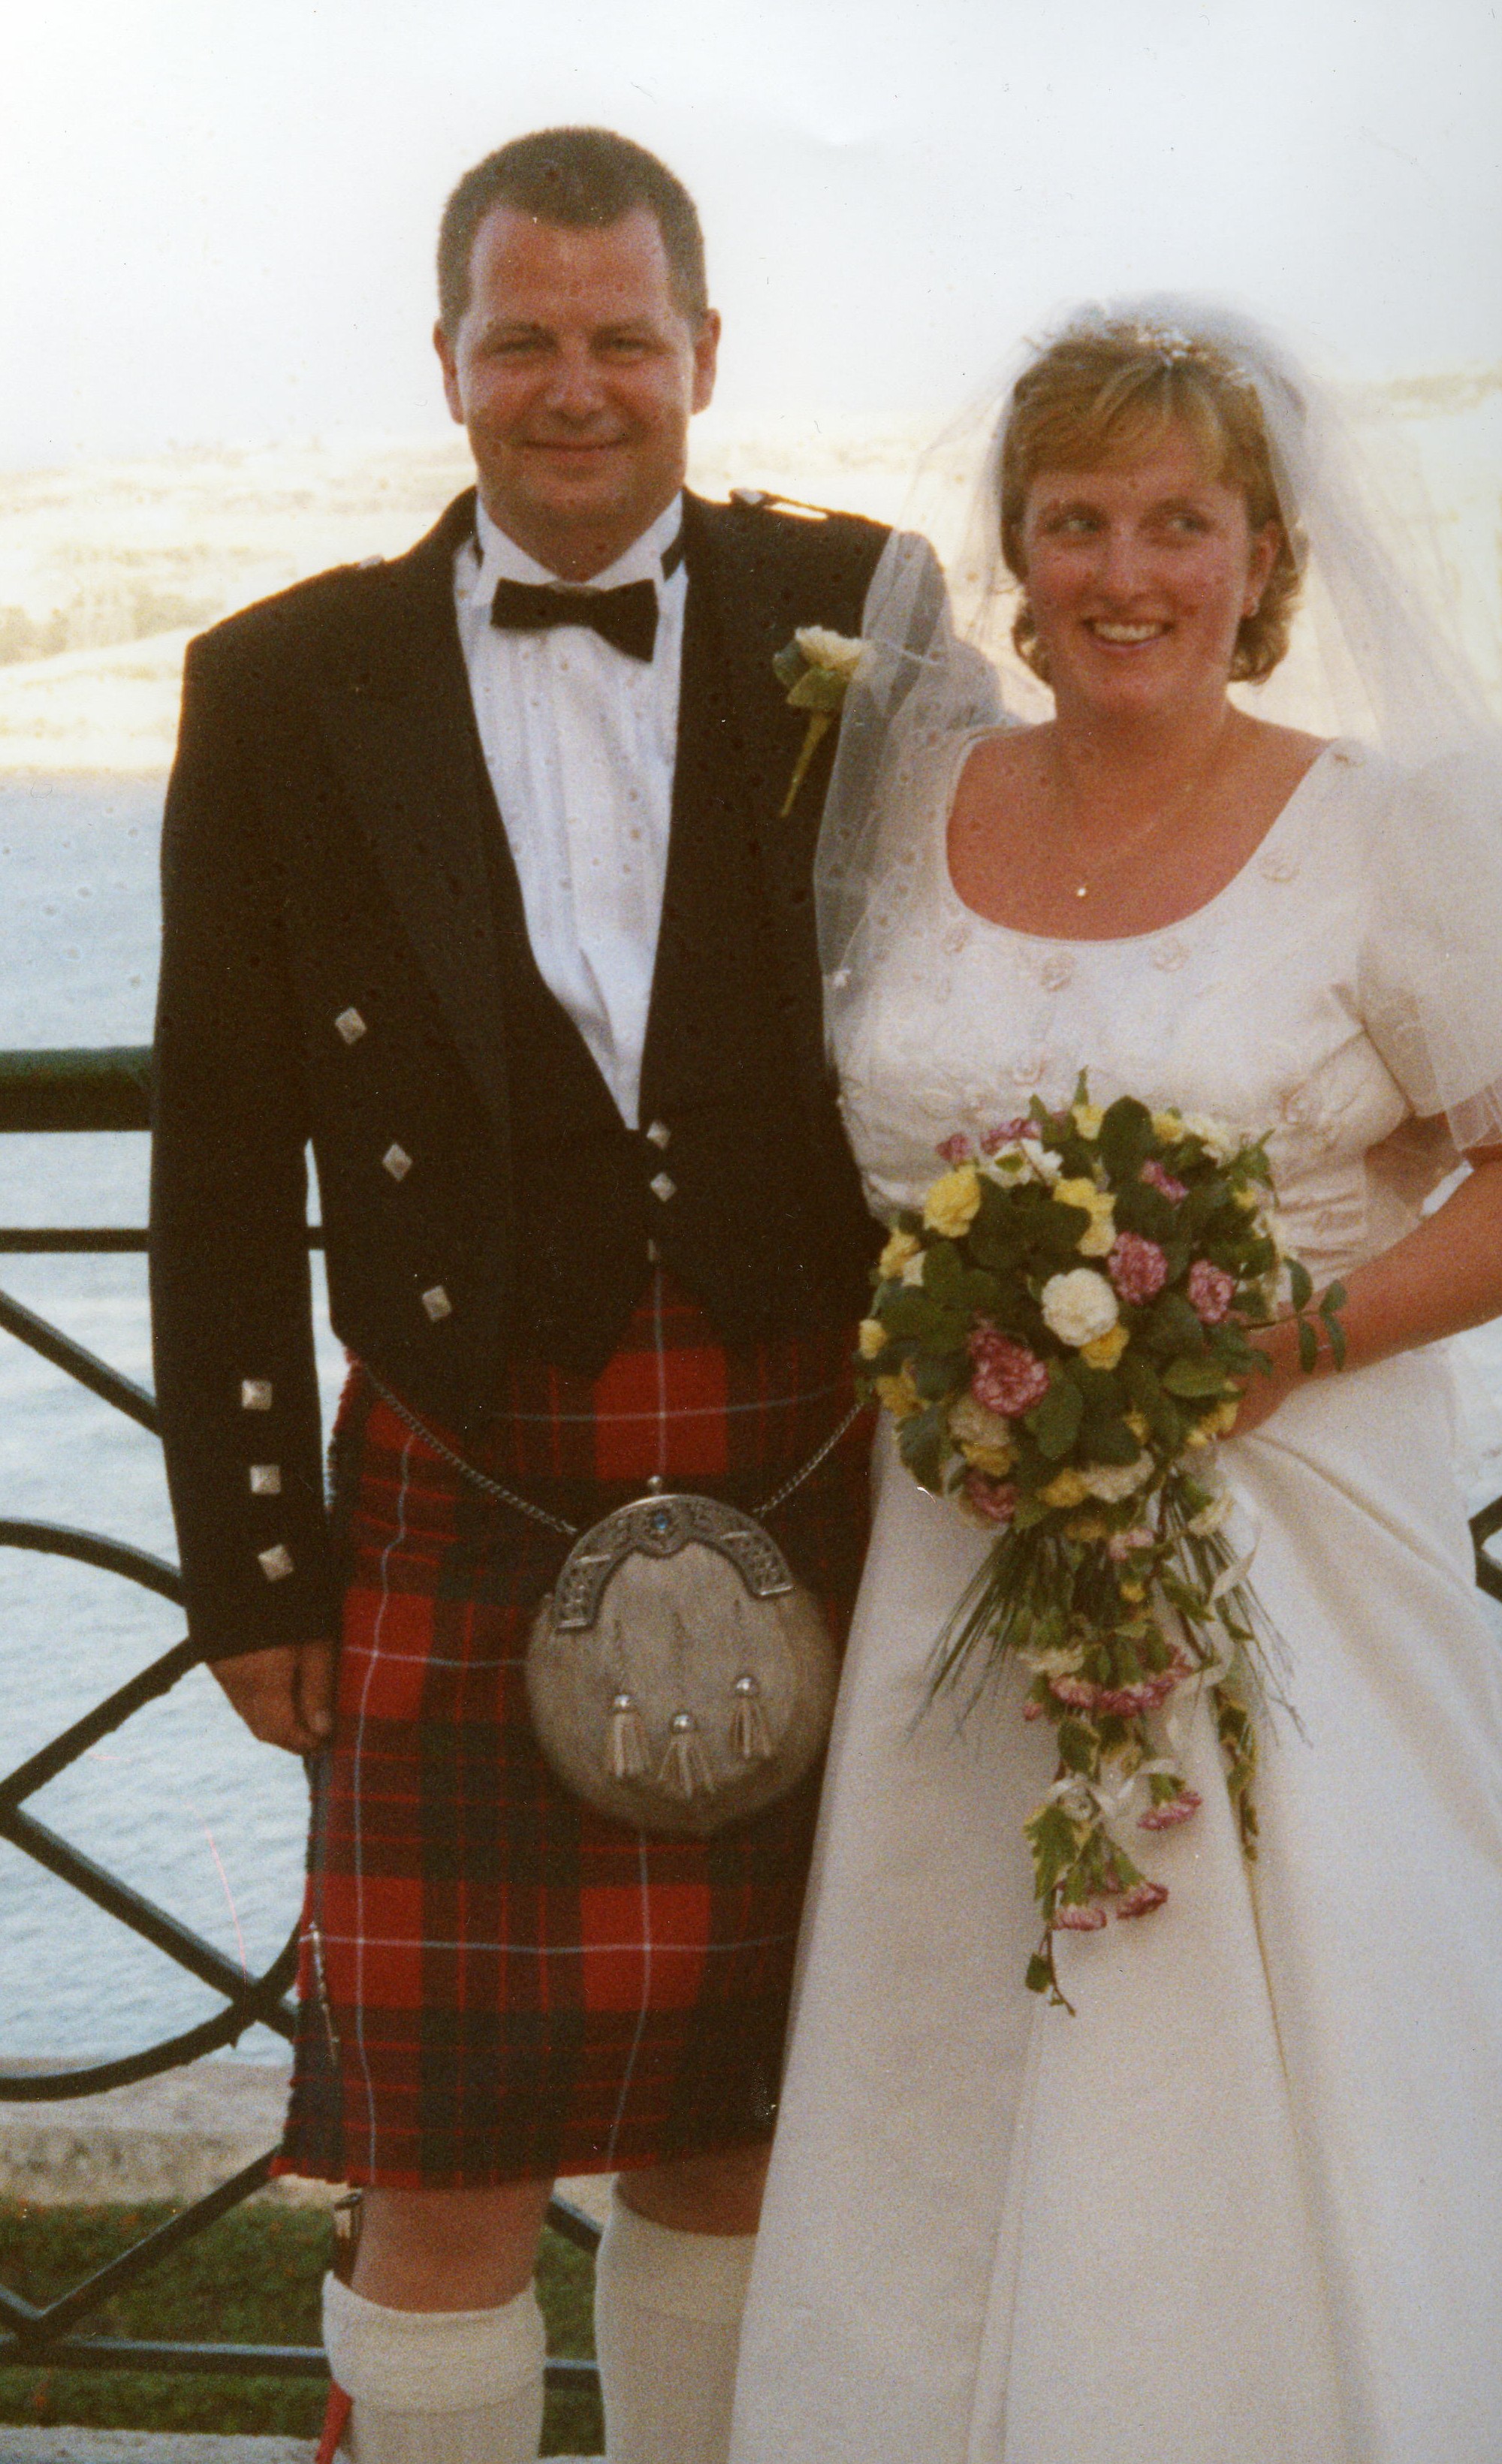 Harris Fraser & Joanne Cocker's Wedding